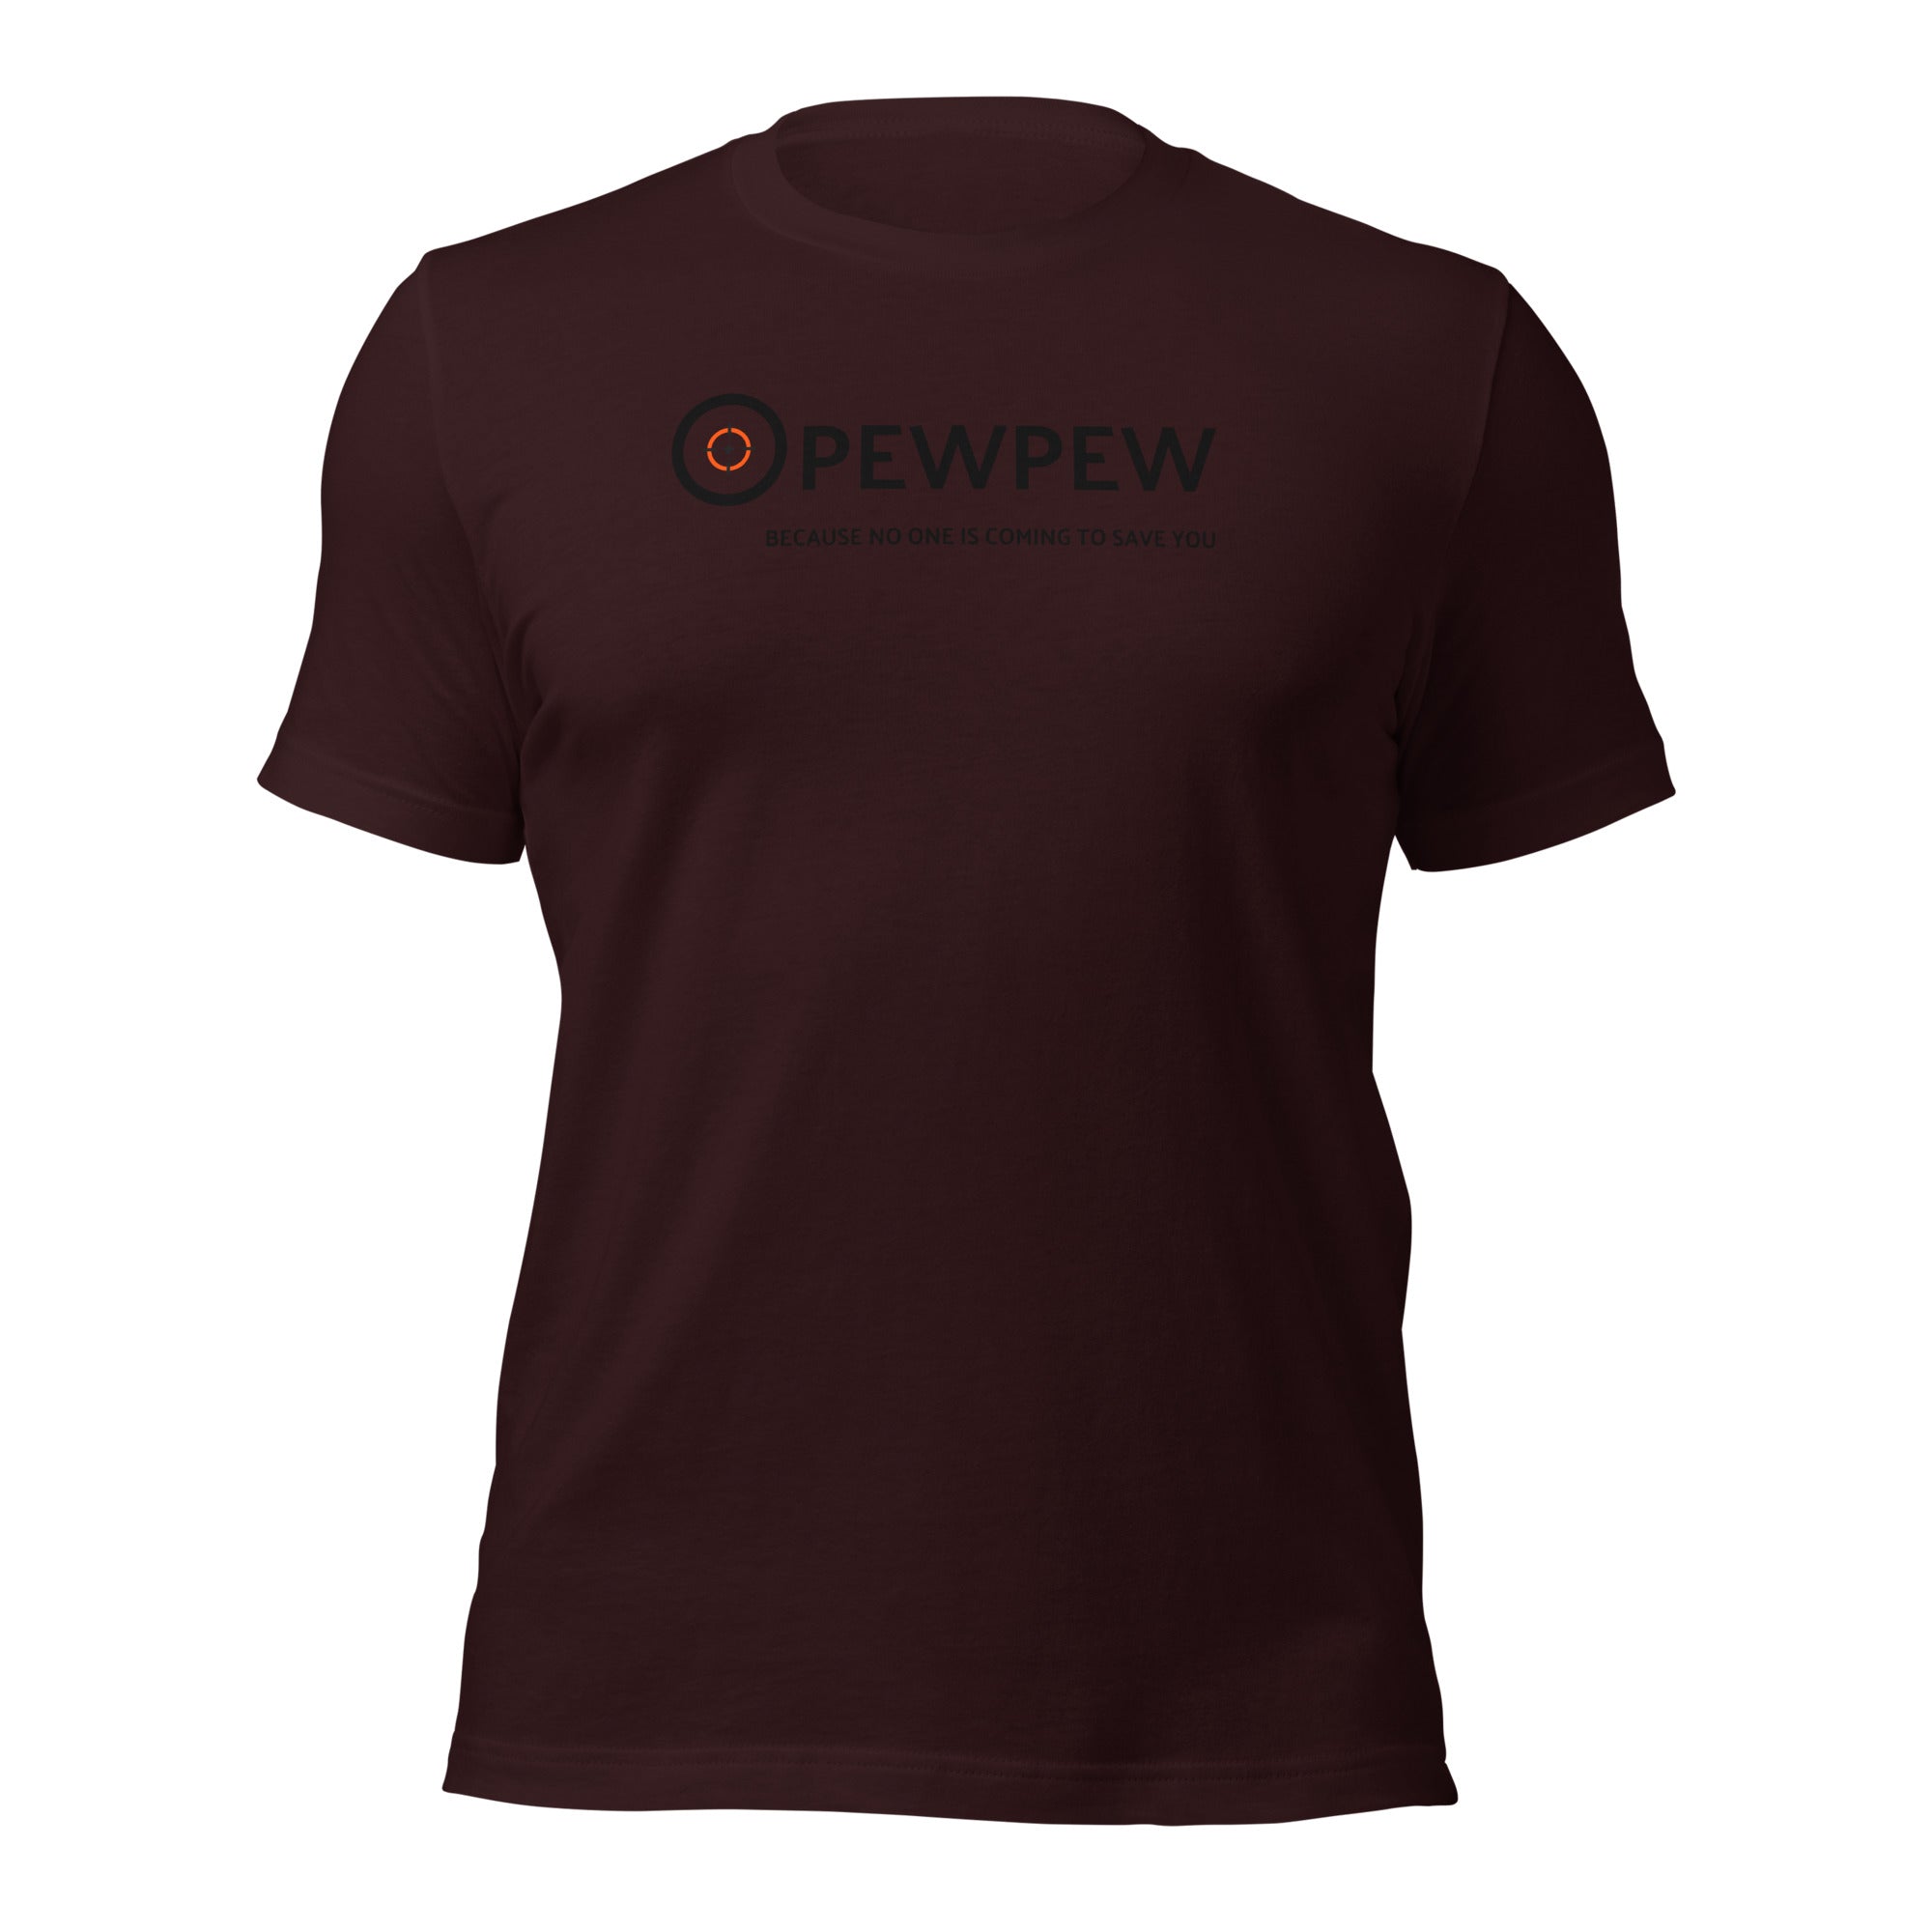 PEWPEW Unisex T-shirt